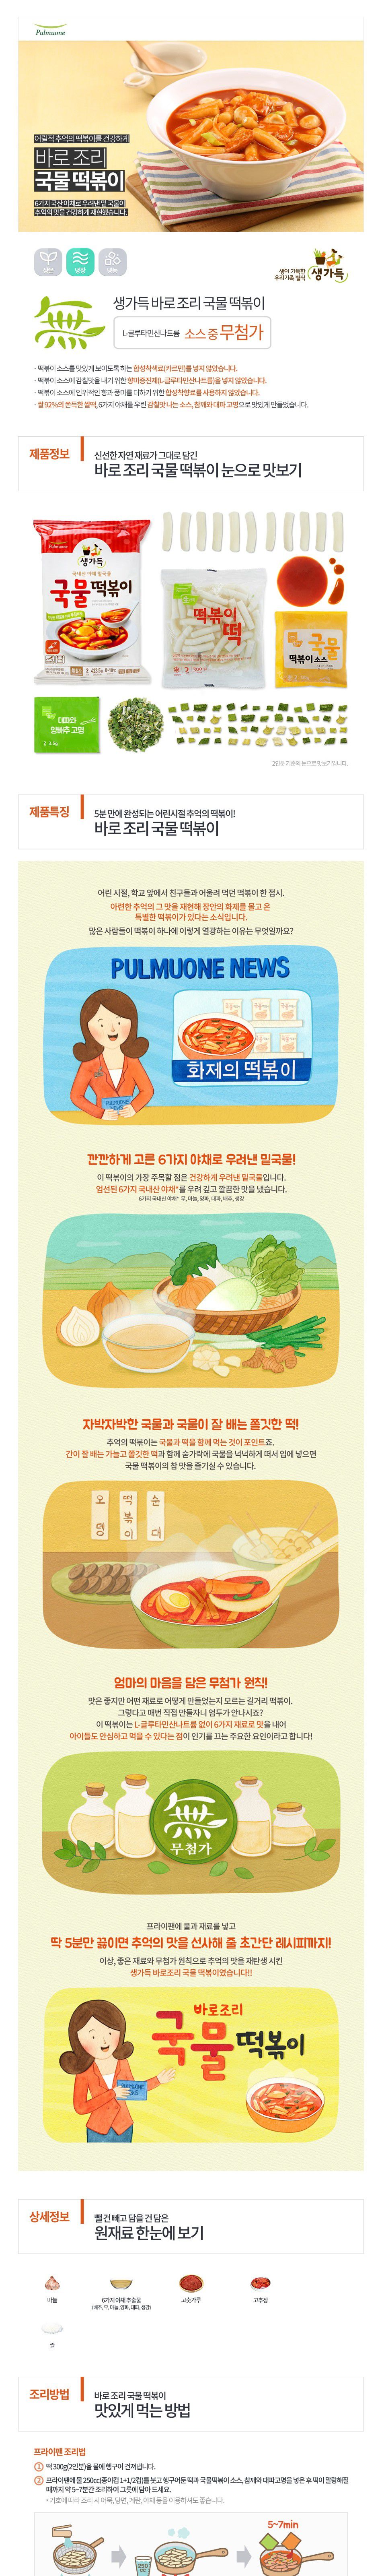 韓國食品-[풀무원] 바로조리국물떡볶이 423.5g